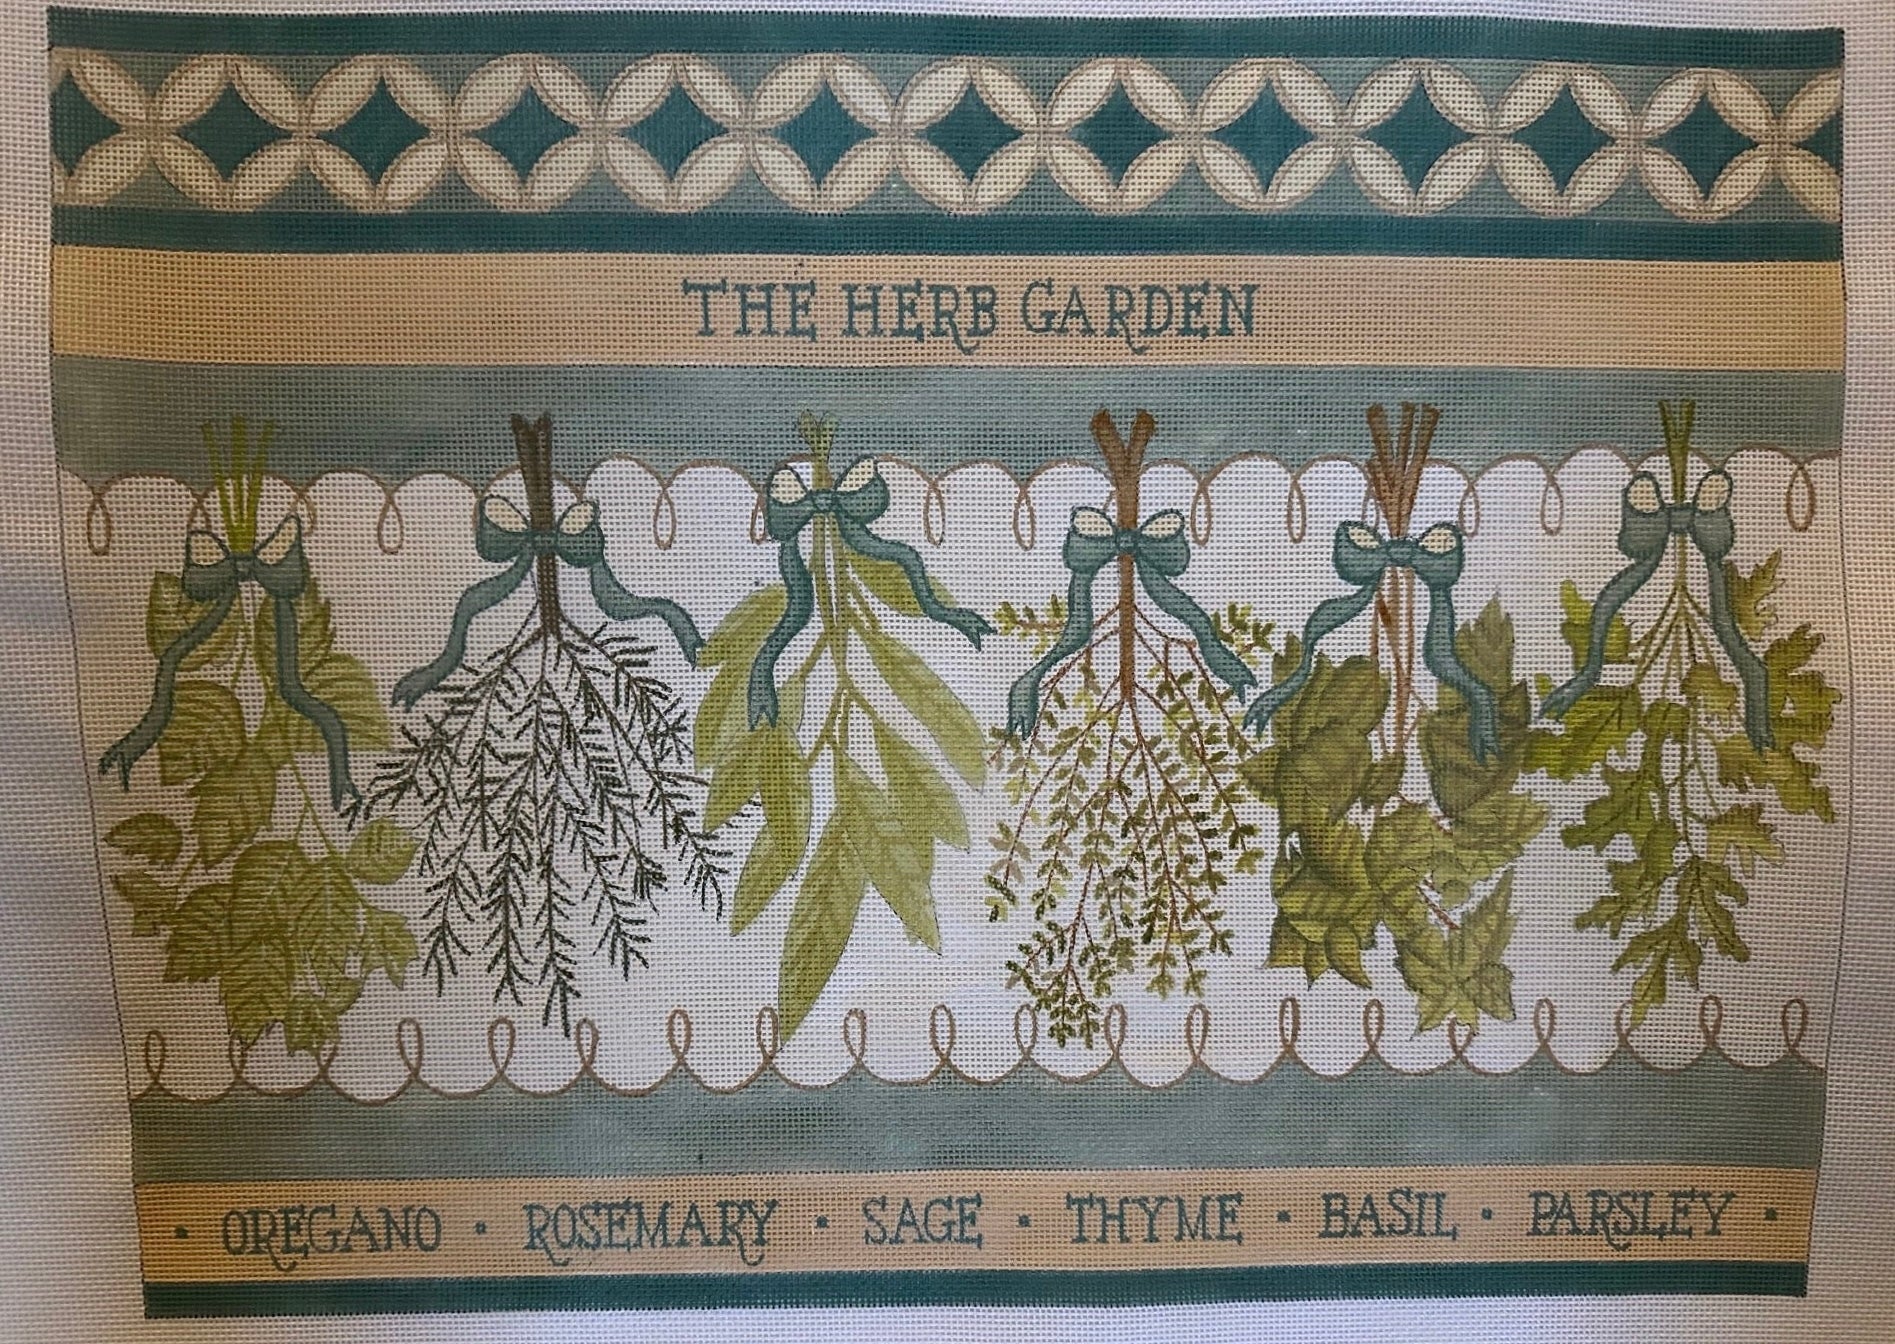 AA-01 - Herb Garden